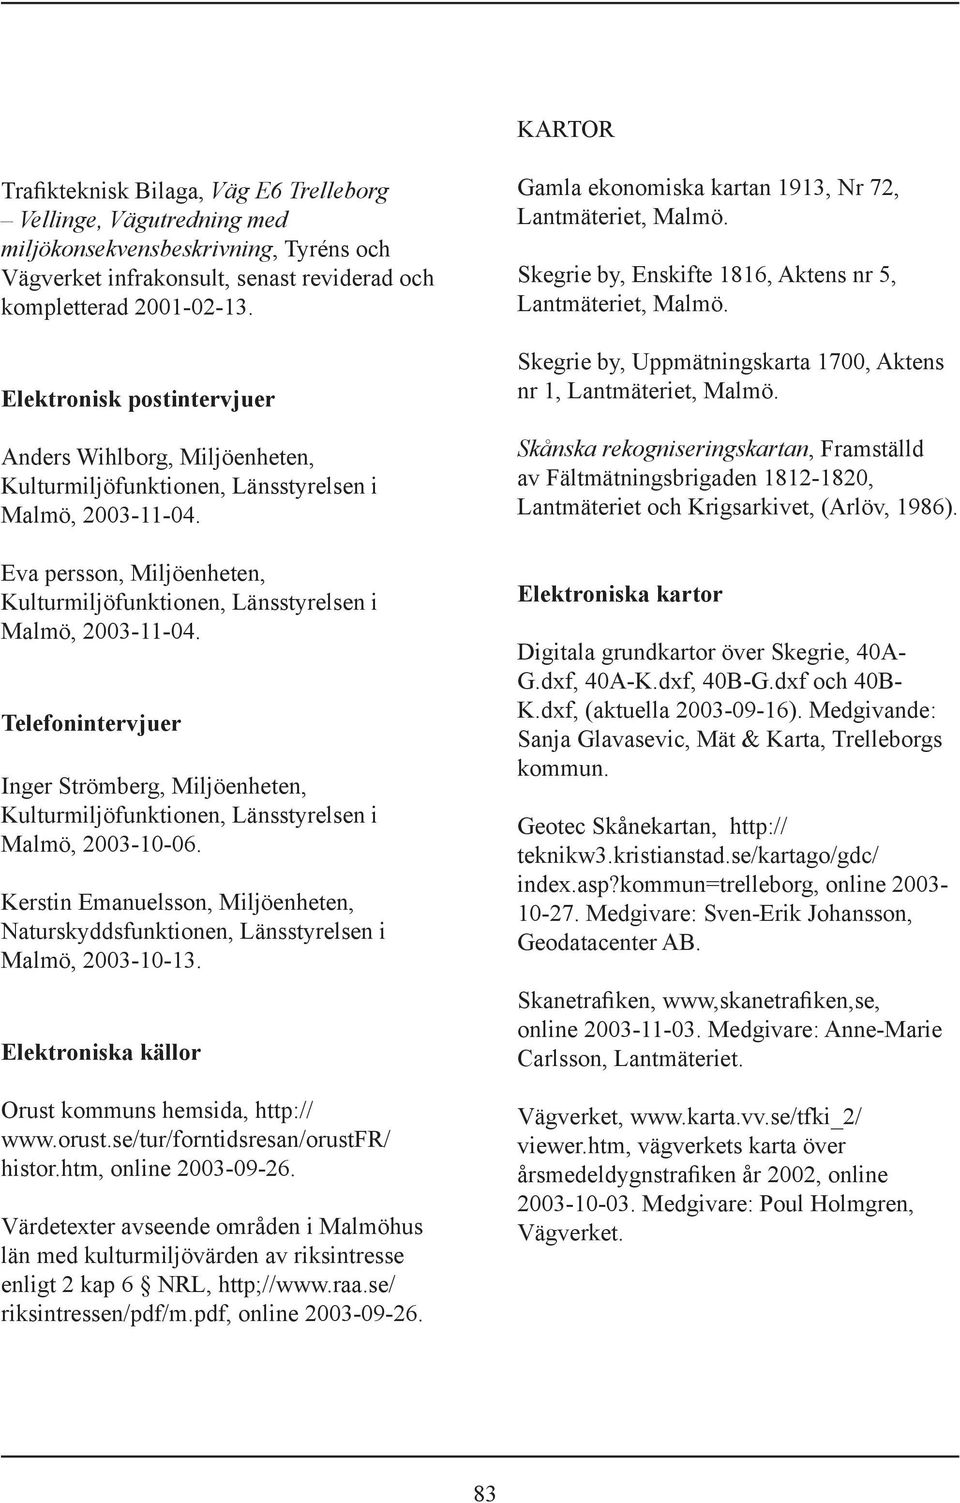 Telefonintervjuer Inger Strömberg, Miljöenheten, Kulturmiljöfunktionen, Länsstyrelsen i Malmö, 2003-10-06. Kerstin Emanuelsson, Miljöenheten, Naturskyddsfunktionen, Länsstyrelsen i Malmö, 2003-10-13.